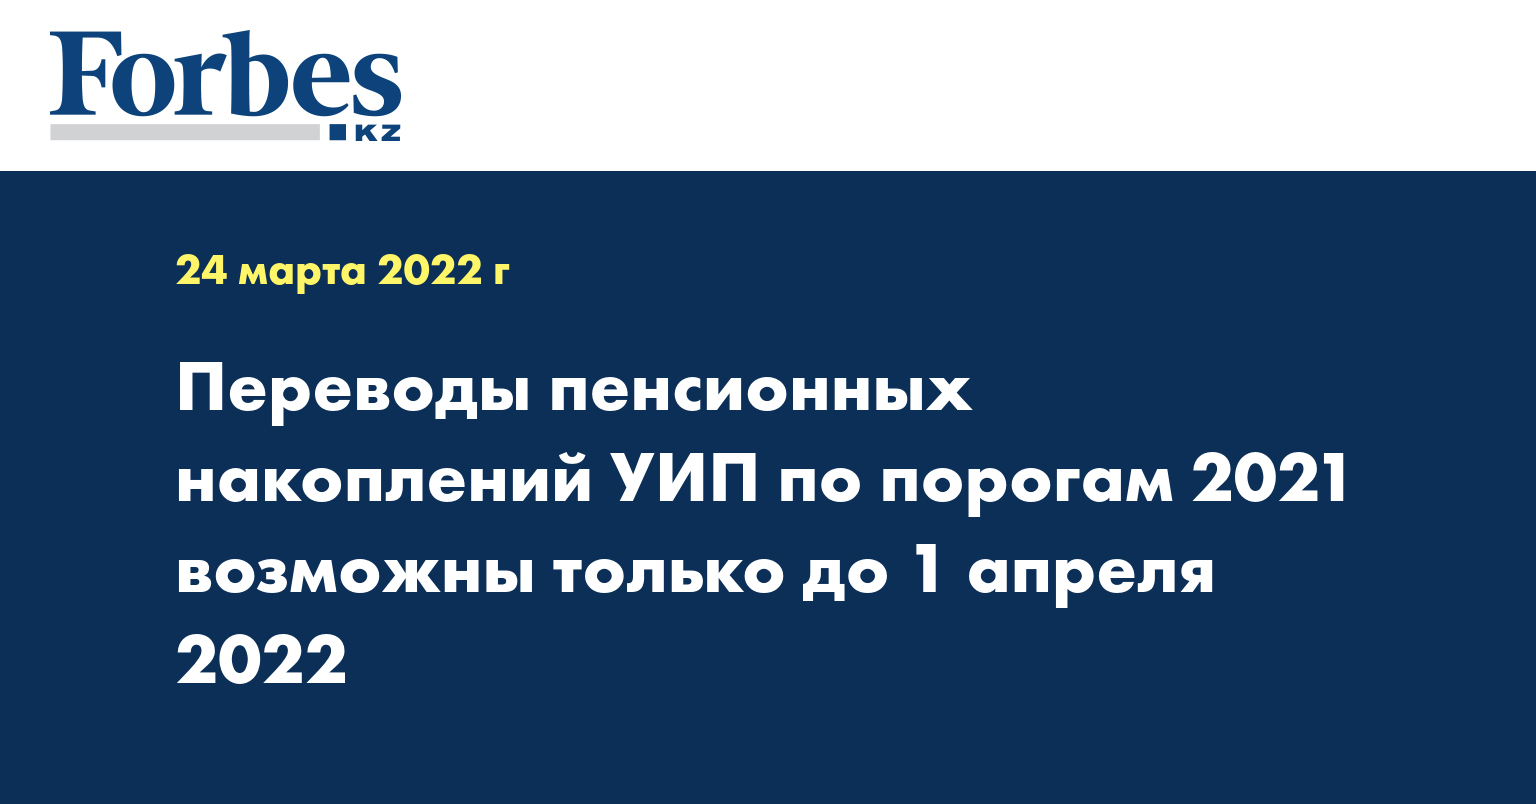 Переводы пенсионных накоплений УИП по порогам 2021 возможны только до 1 апреля 2022